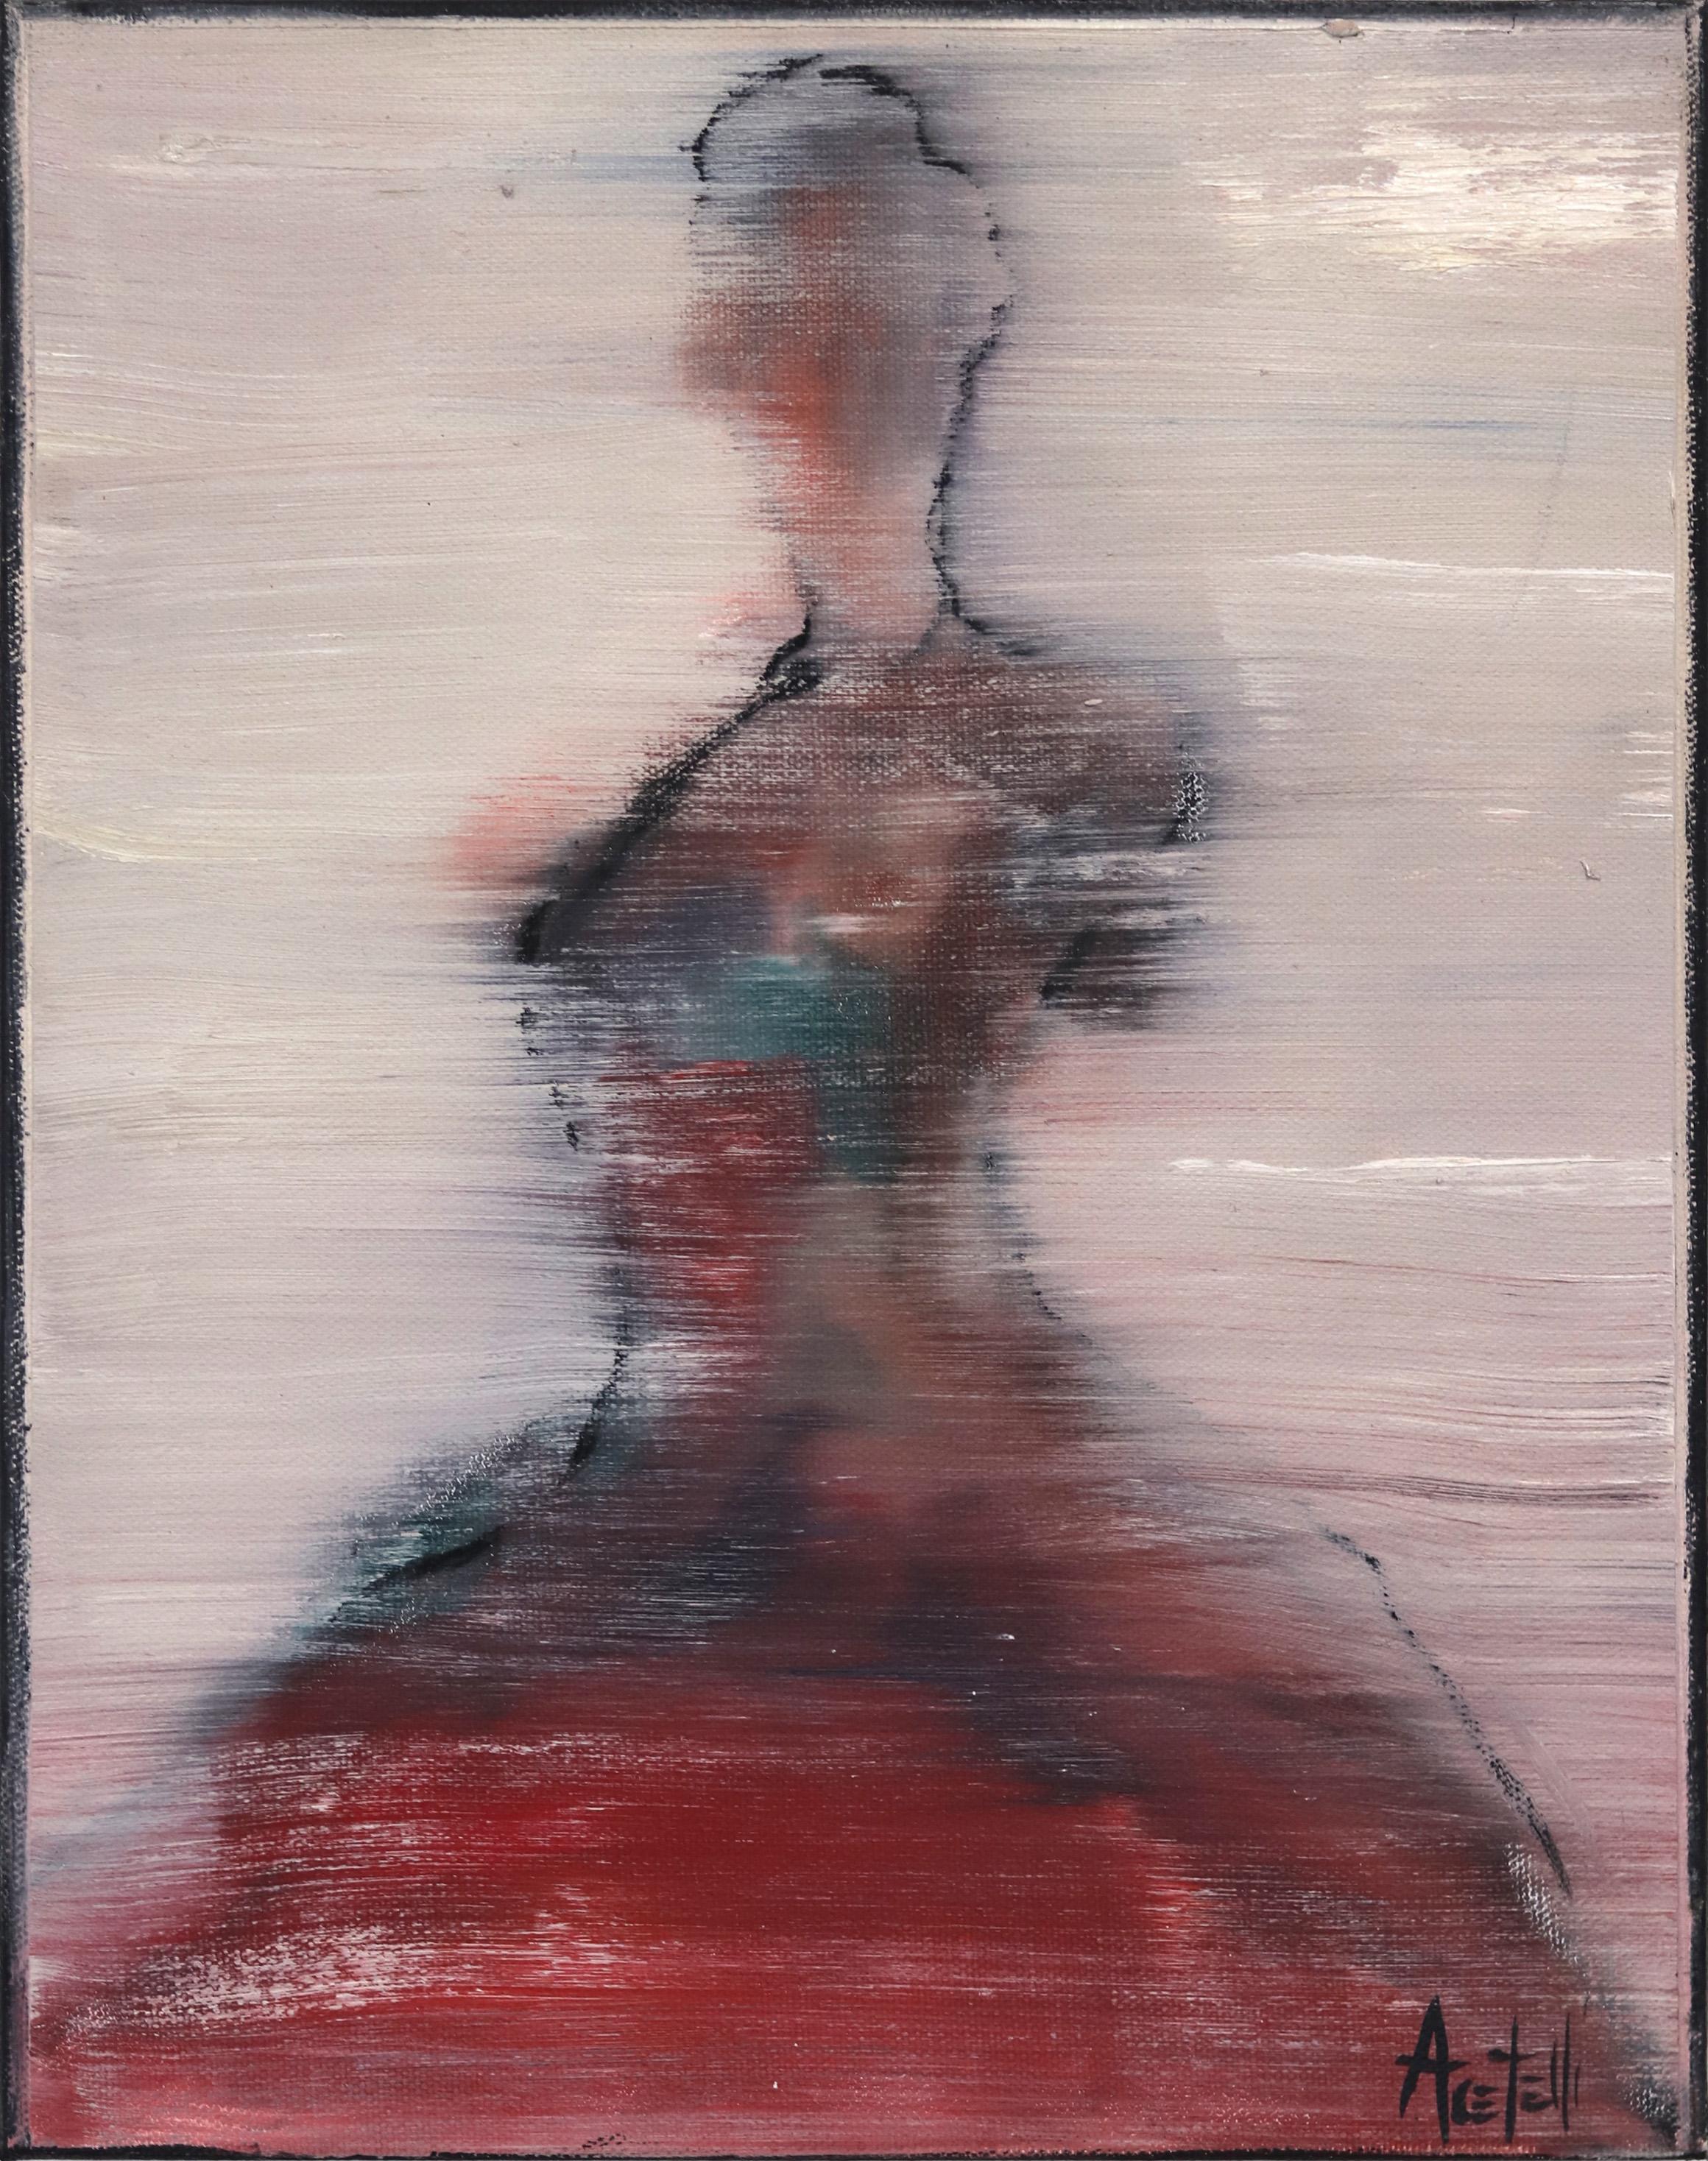 Figurative Painting Mark Acetelli - Aria n°3 - Huile sur toile - Peinture figurative abstraite d'une danseuse